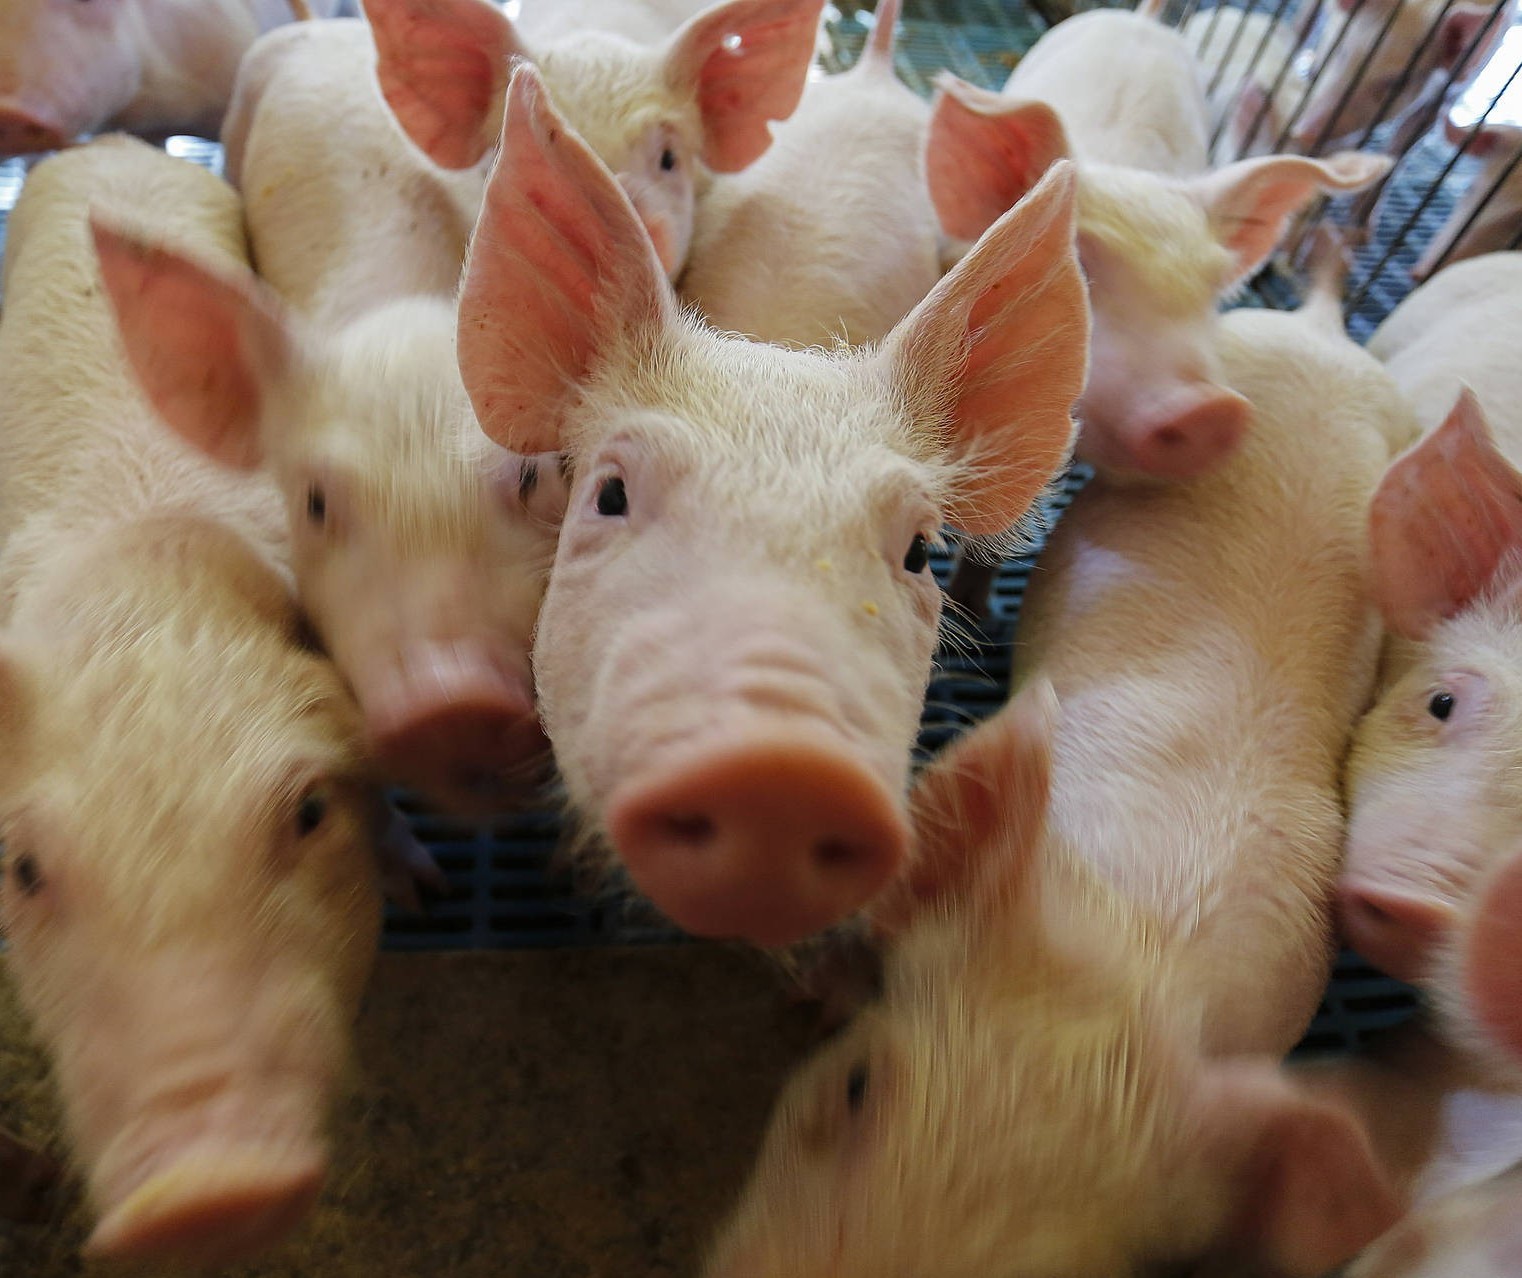 Entre estados do sul, só o Paraná evoluiu na comercialização de suínos